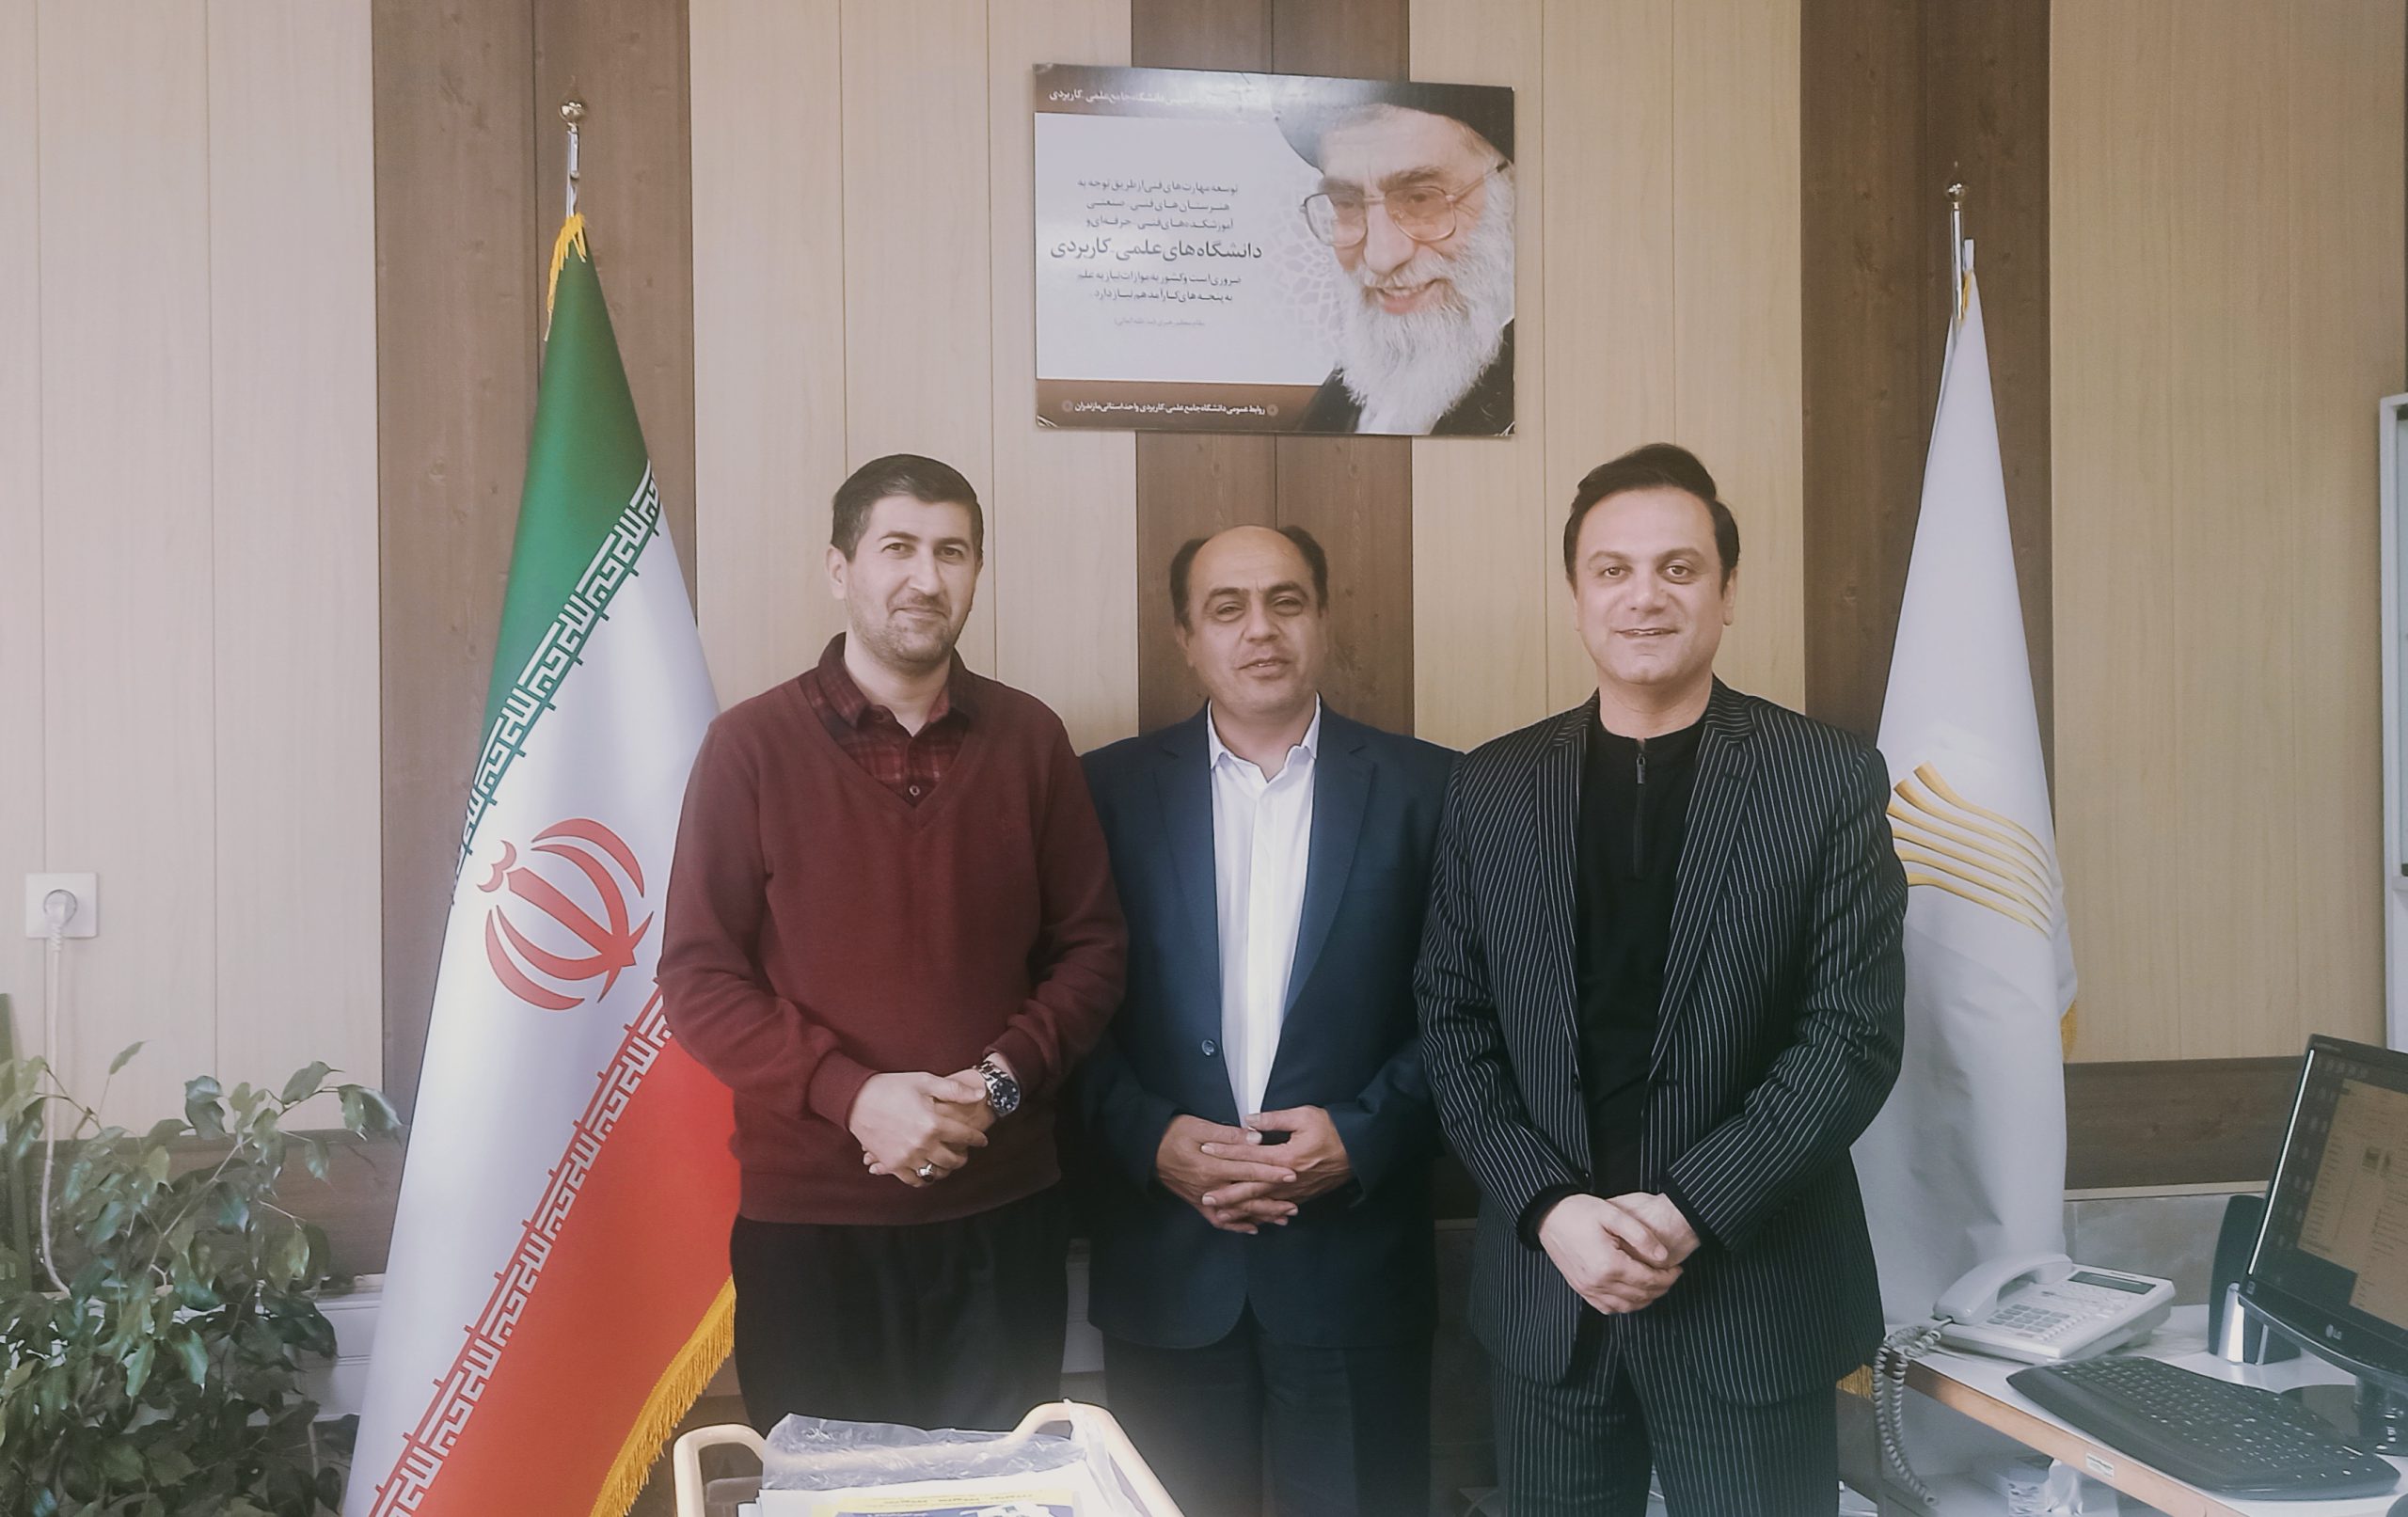 نشست مشترک رئیس اتاق اصناف شهرستان بهشهر با رئیس دانشگاه علمی کاربردی شرکت صنایع چوب و کاغذ مازندران